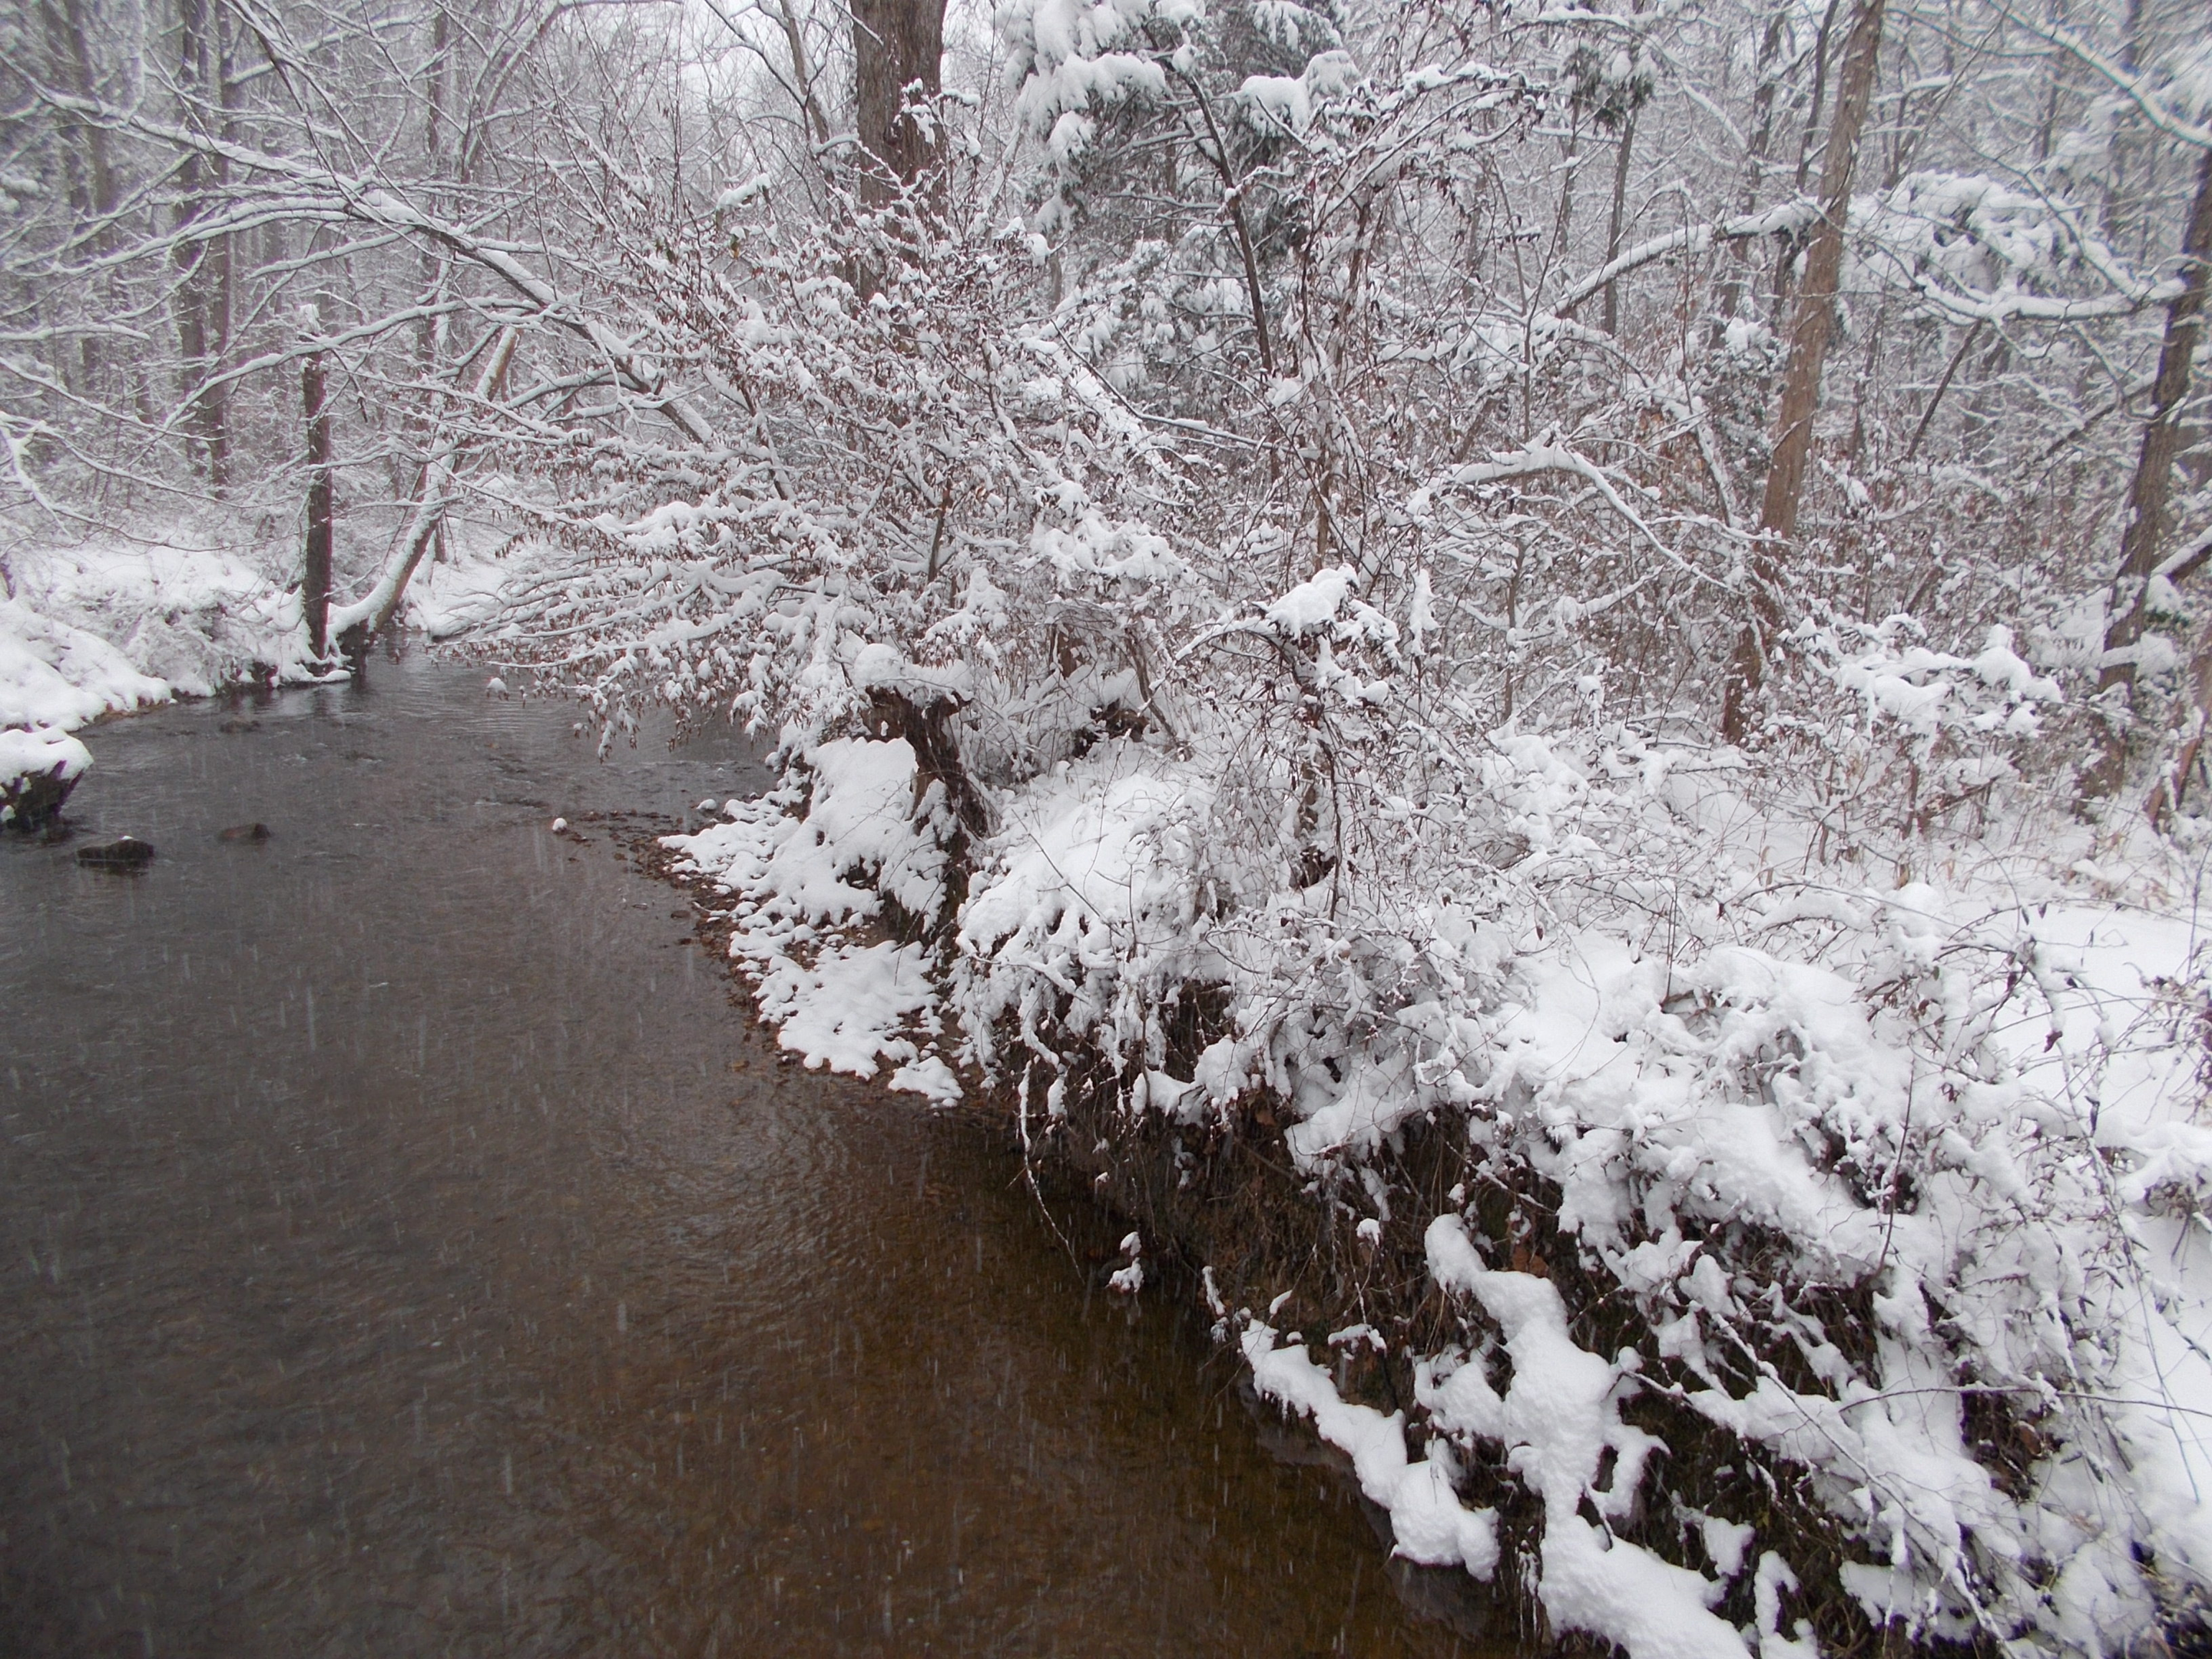 Pohick Creek un jour d'hiver